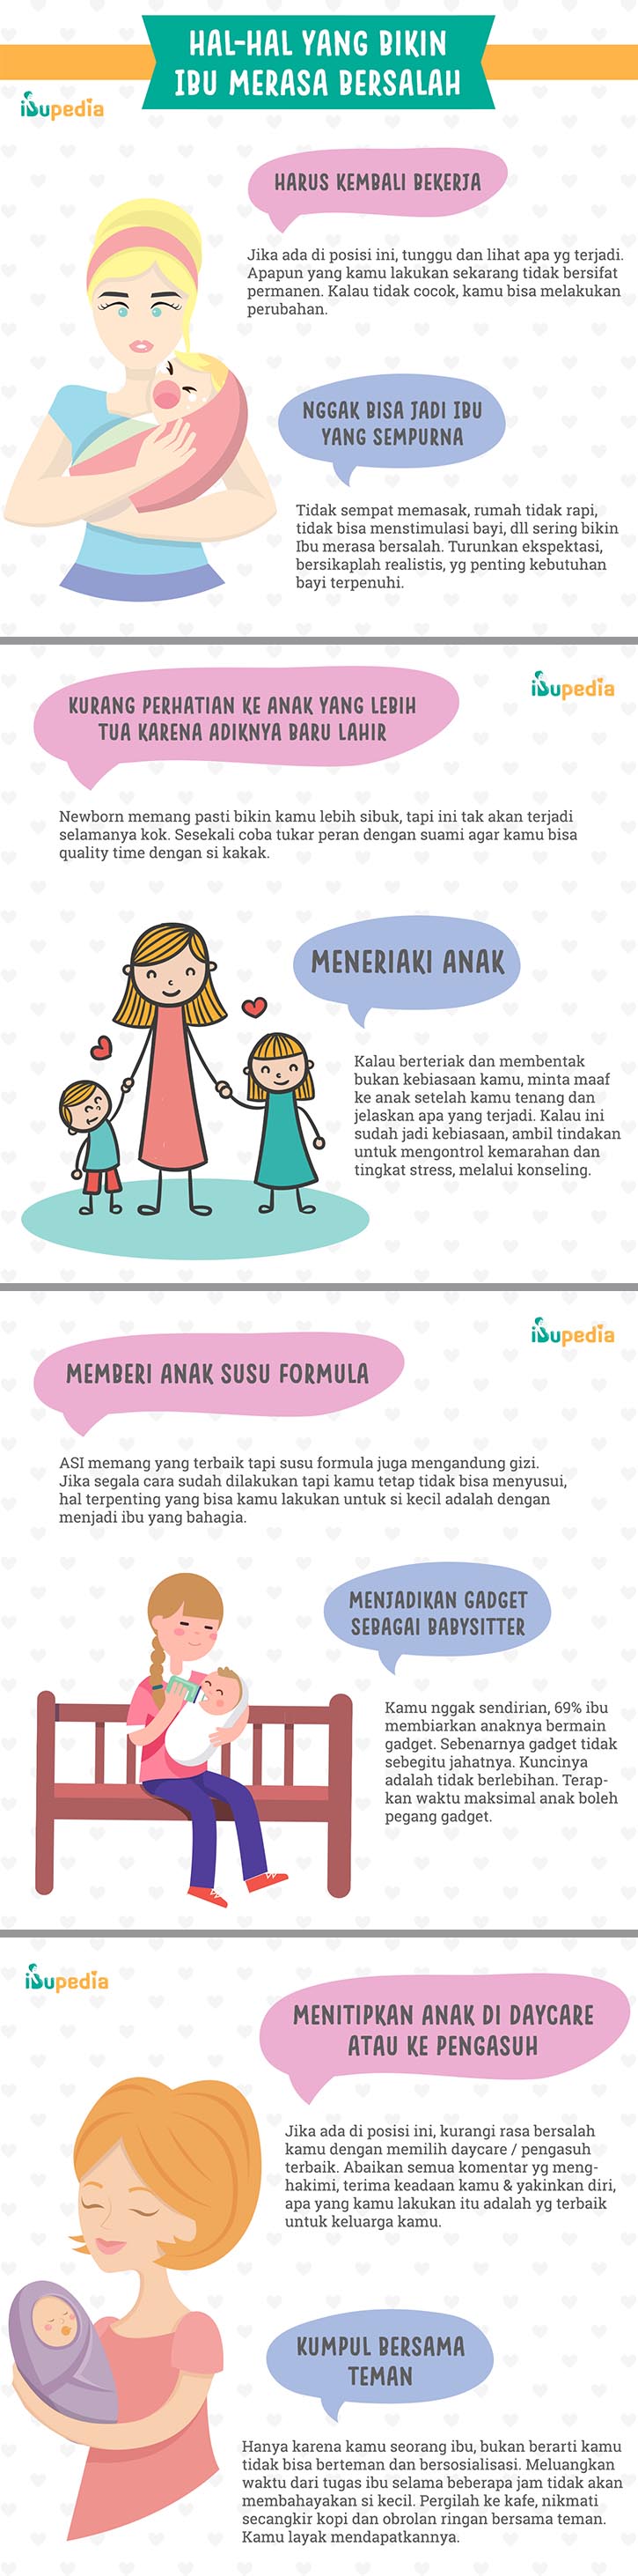 Infografis: Hal-Hal yang Bikin Ibu Merasa Bersalah